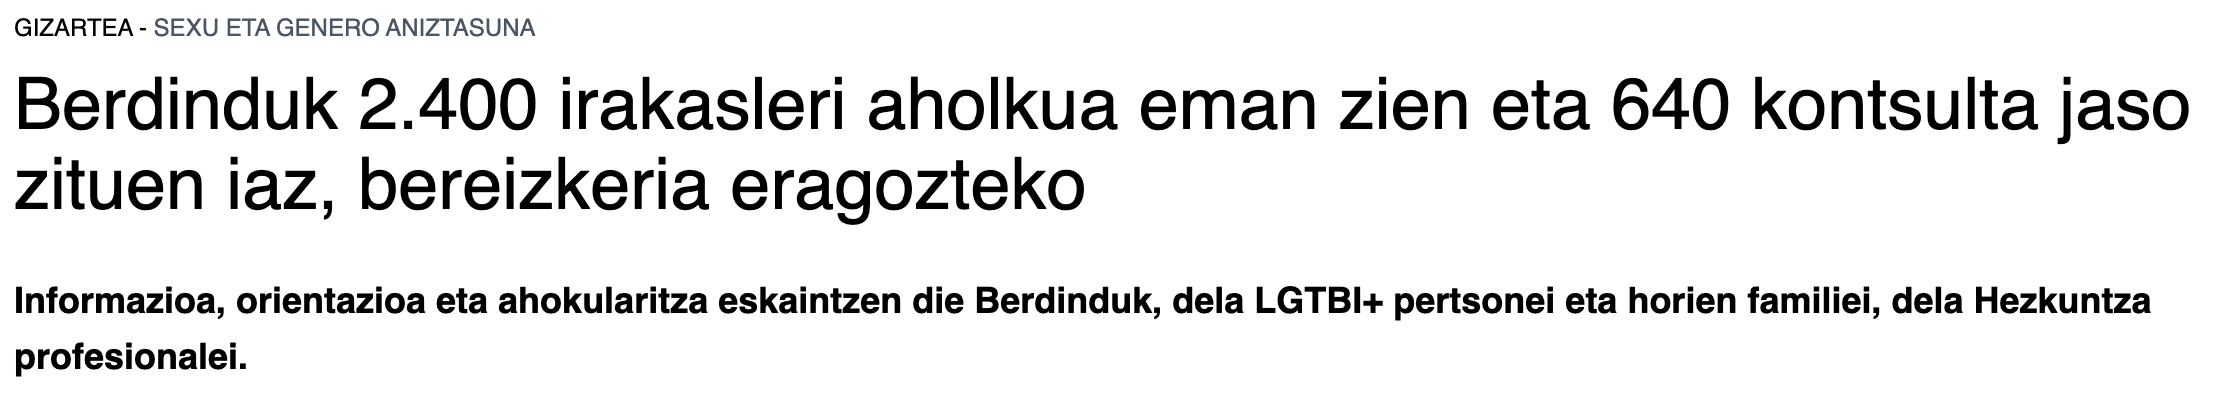 EITB.eus: "Berdindu! asesoró en 2022 a 2400 docentes y atendió 640 consultas, para combatir la discriminación LGTBI+"